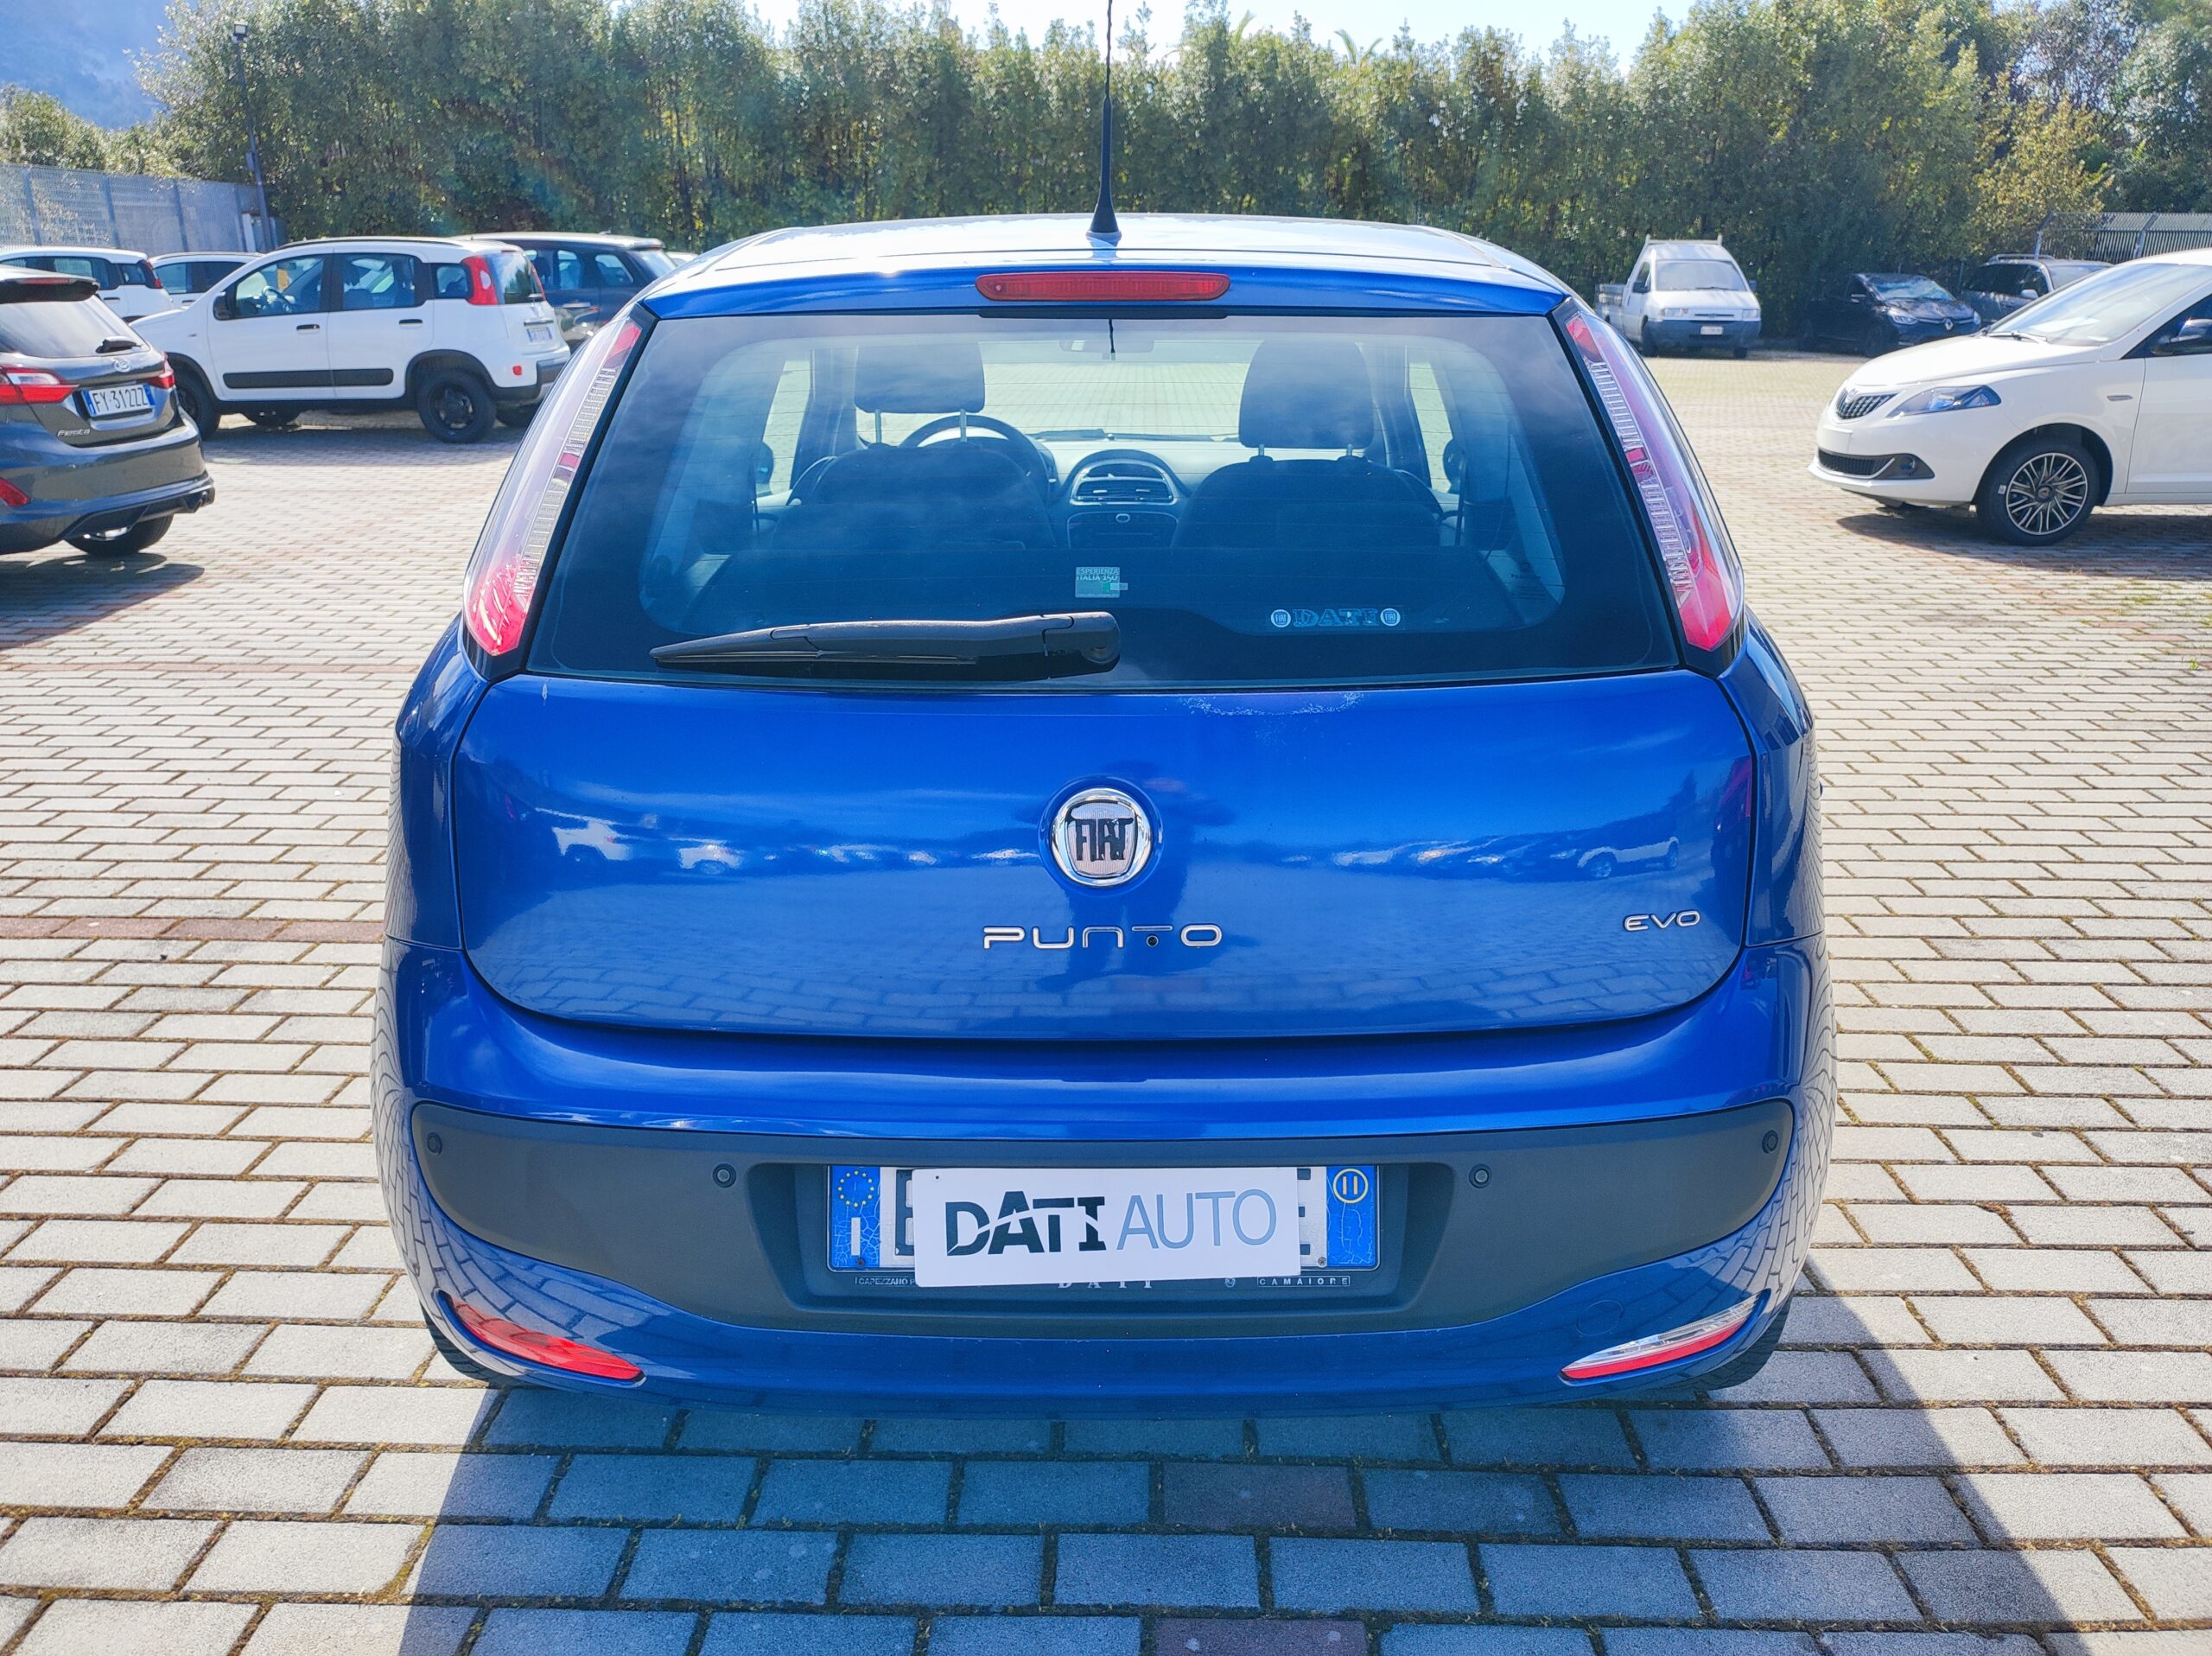 Fiat Grande Punto 3P Cambio Automatico